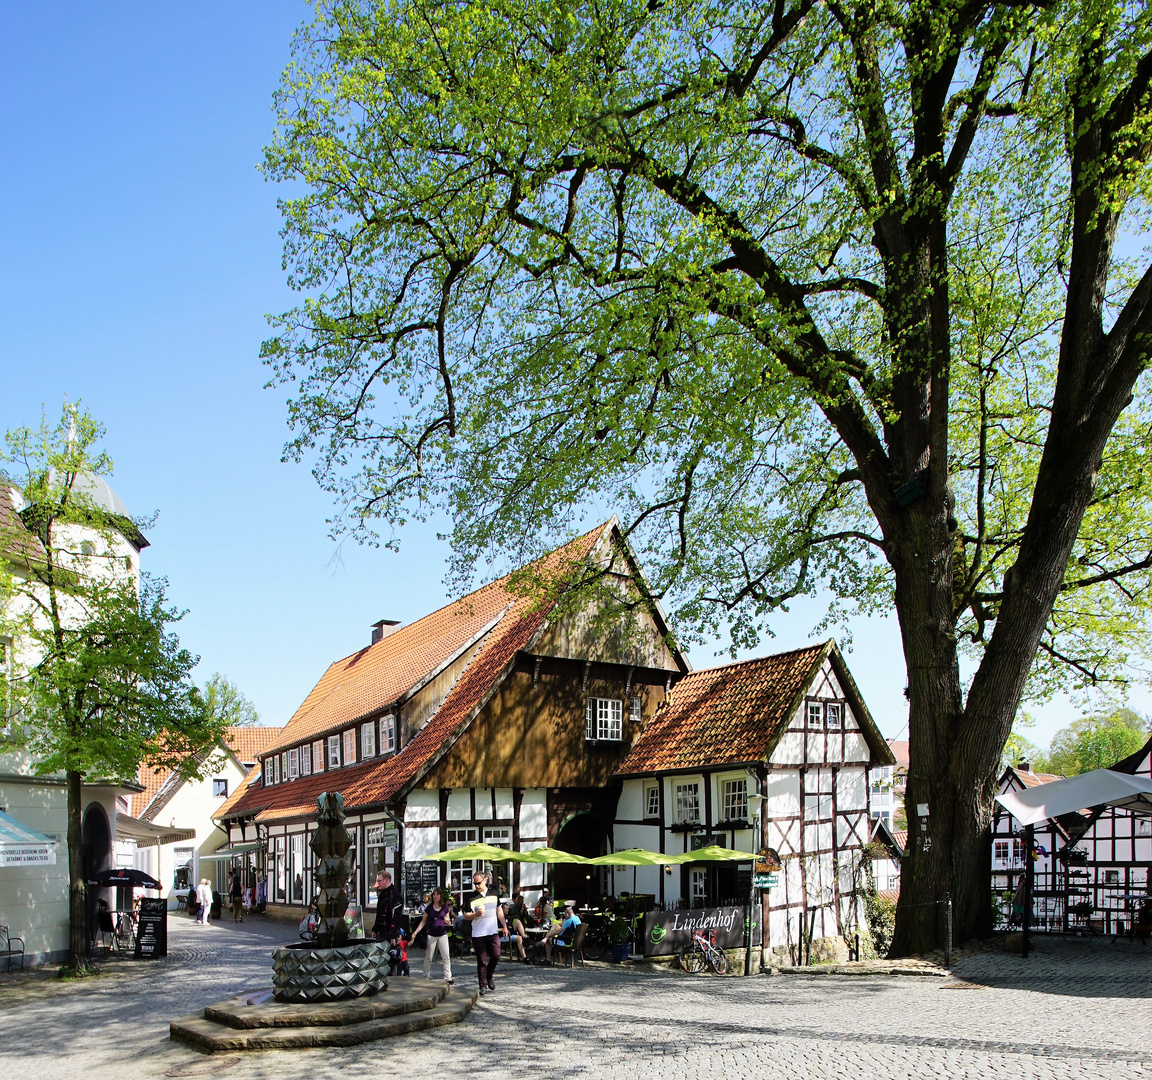 Der Lindenhof am Marktplatz in Tecklenburg